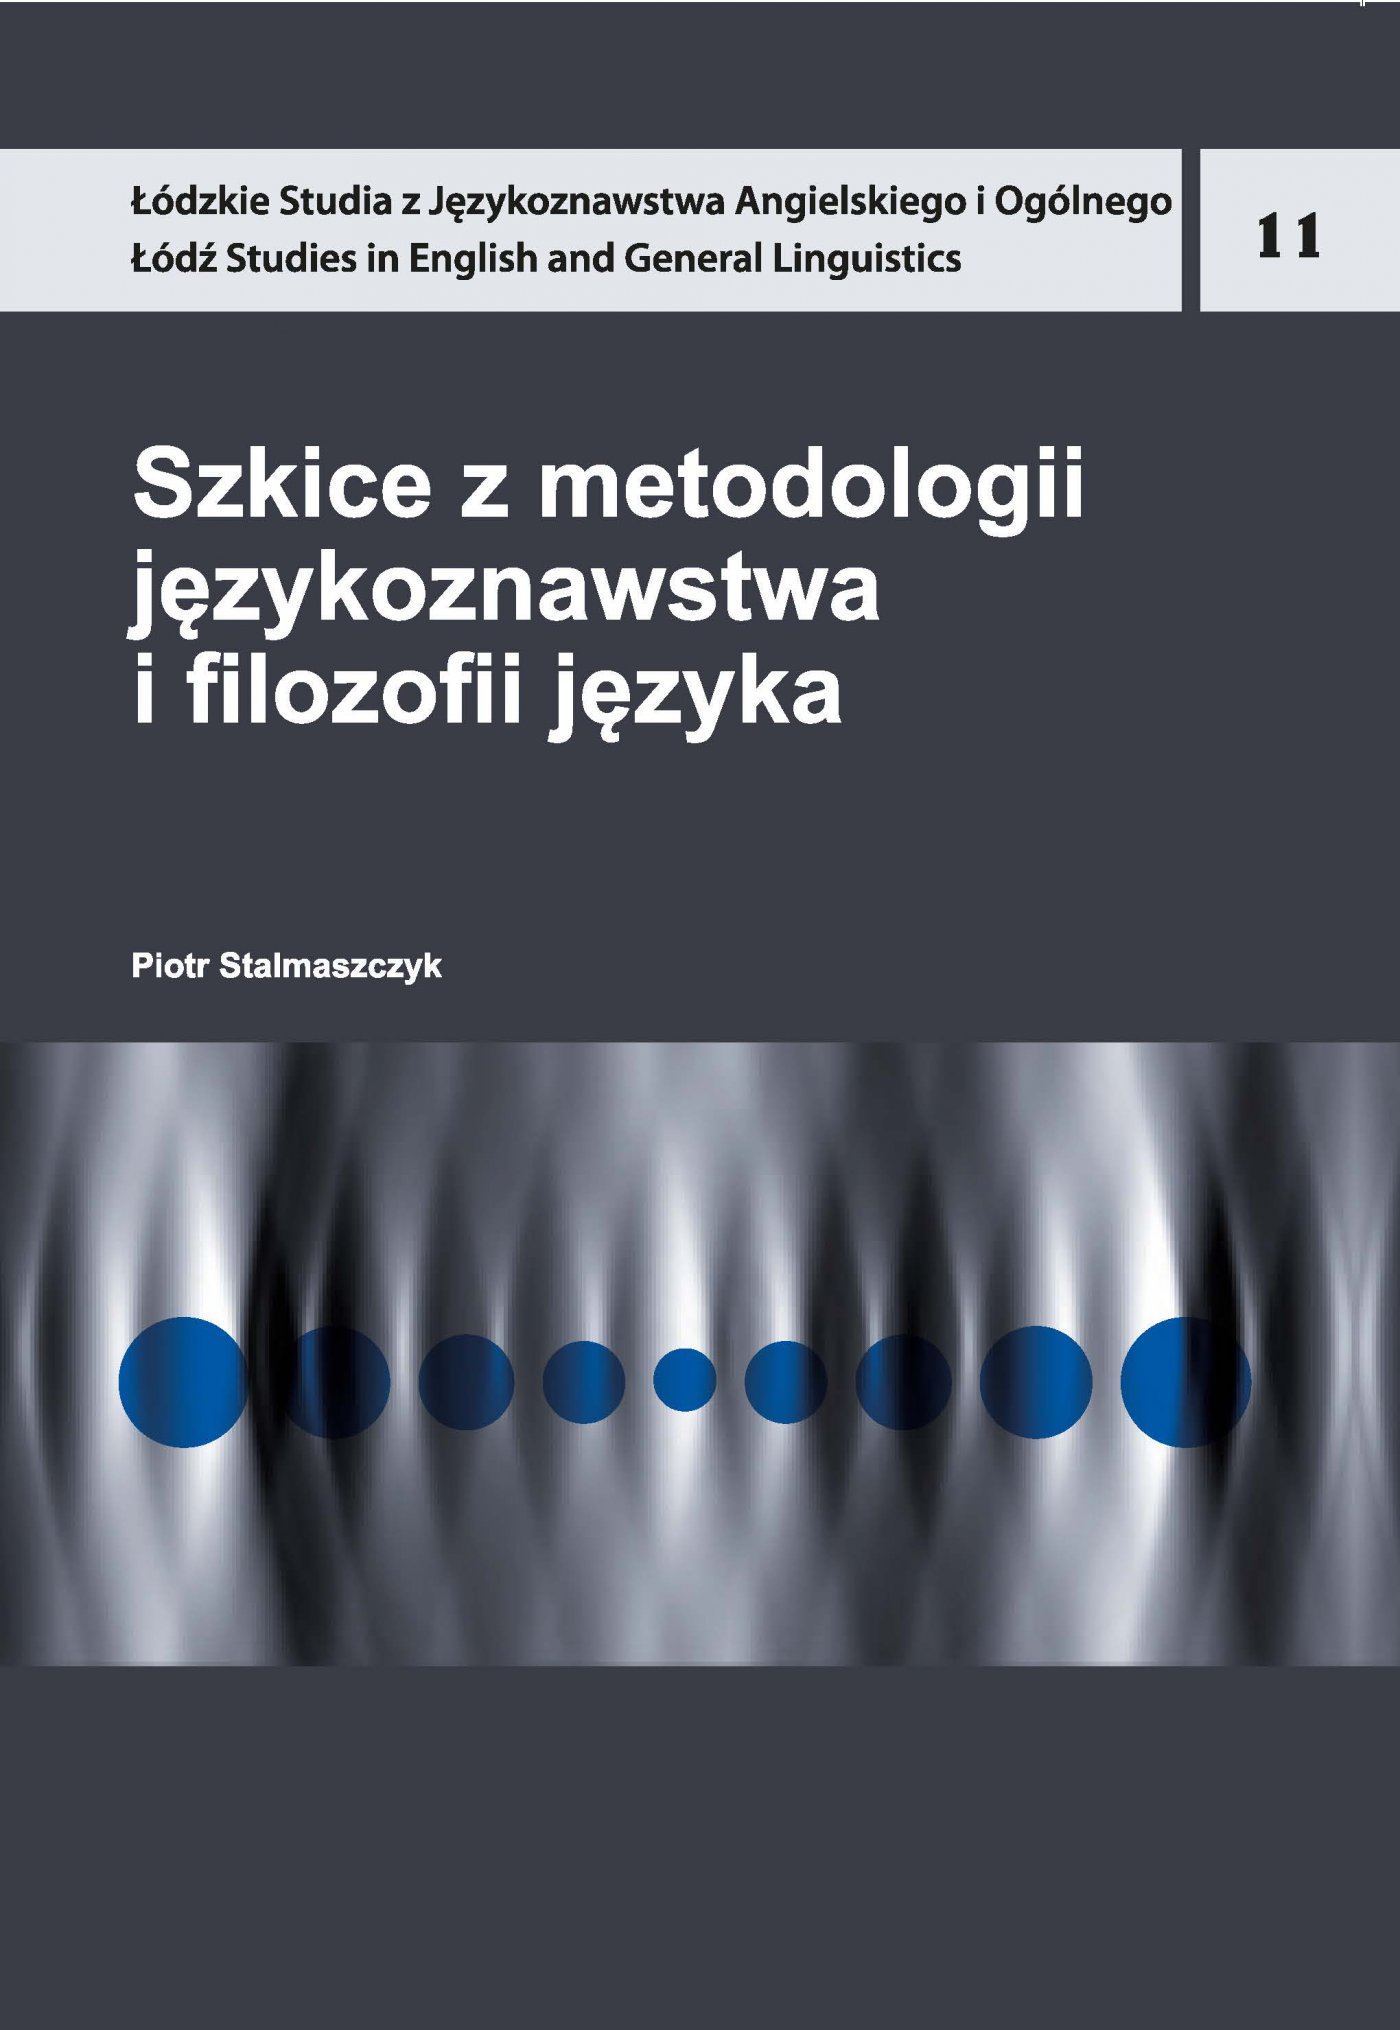 Szkice z metodologii językoznawstwa i filozofii języka - Ebook (Książka PDF) do pobrania w formacie PDF